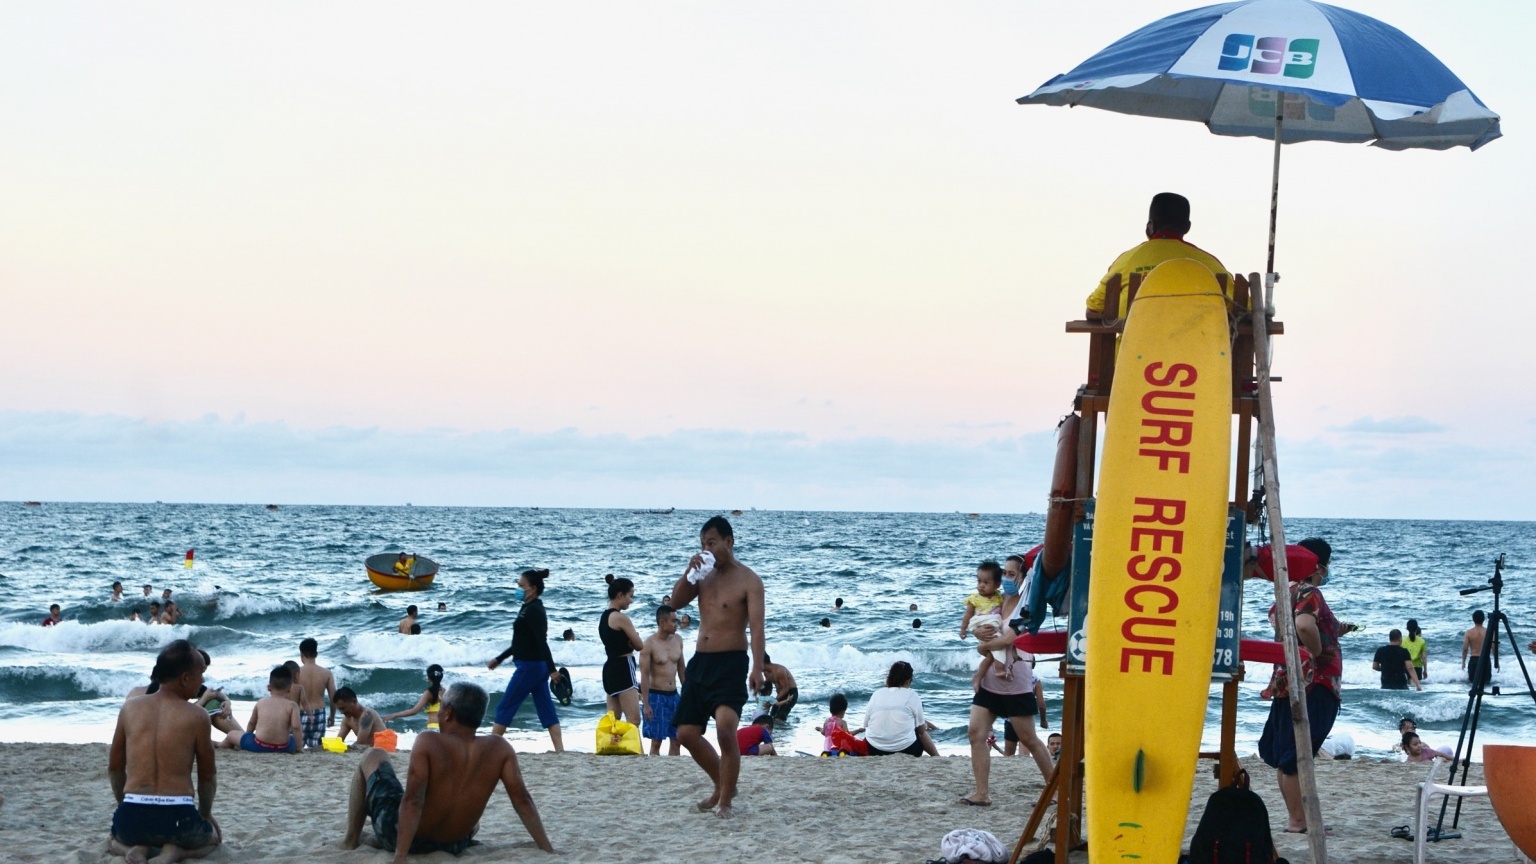 Đà Nẵng: Khuyến cáo du khách và người dân bảo quản tài sản khi vui chơi tắm biển